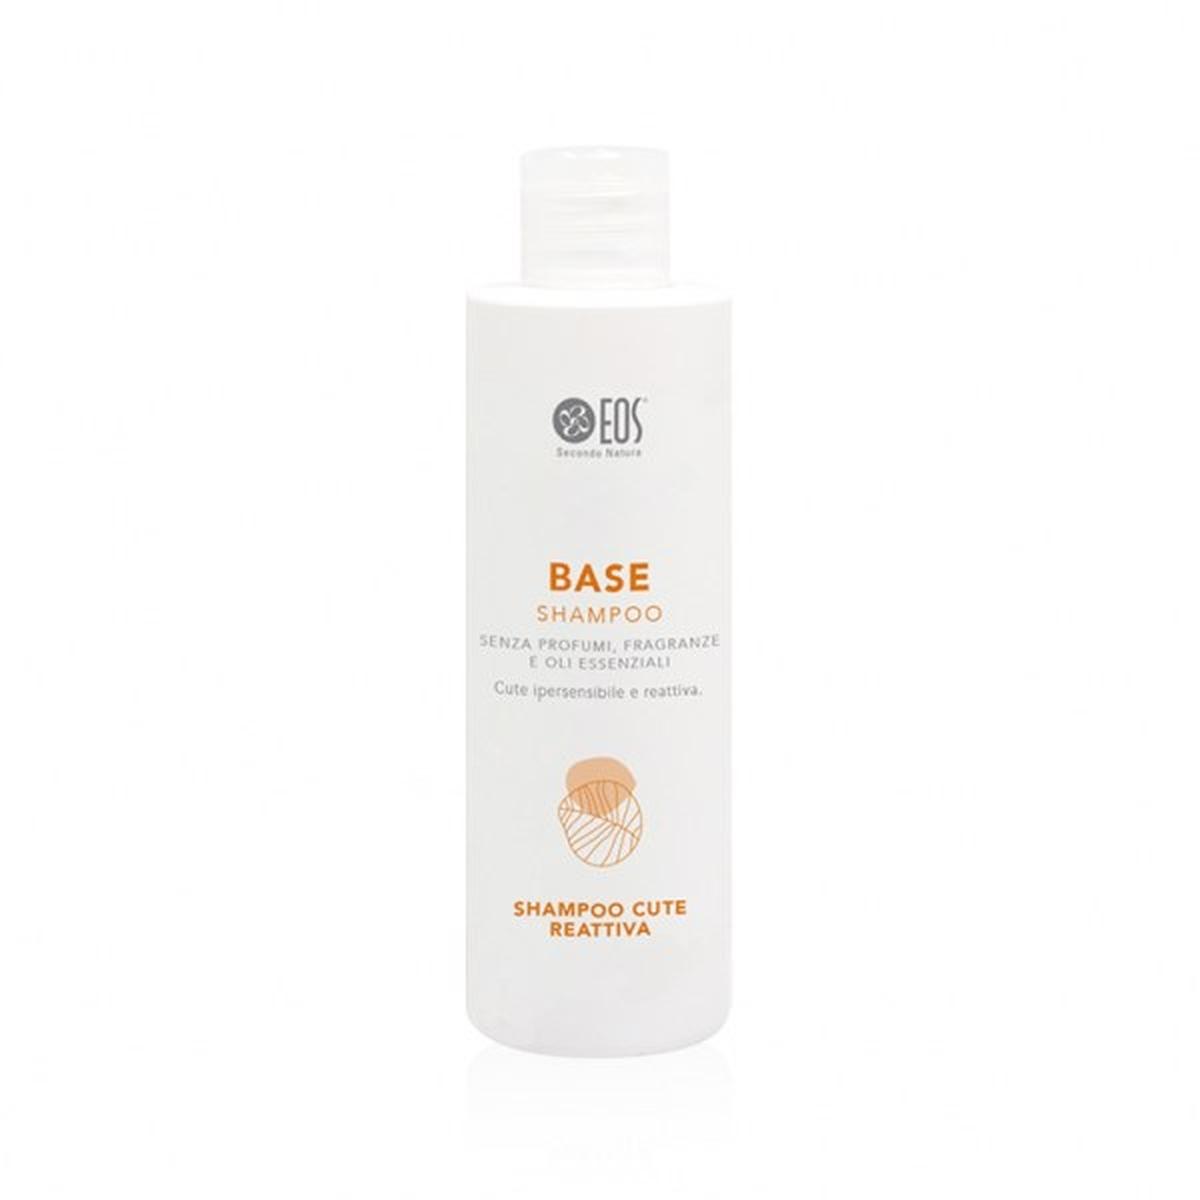 BASE Shampoo - Eos